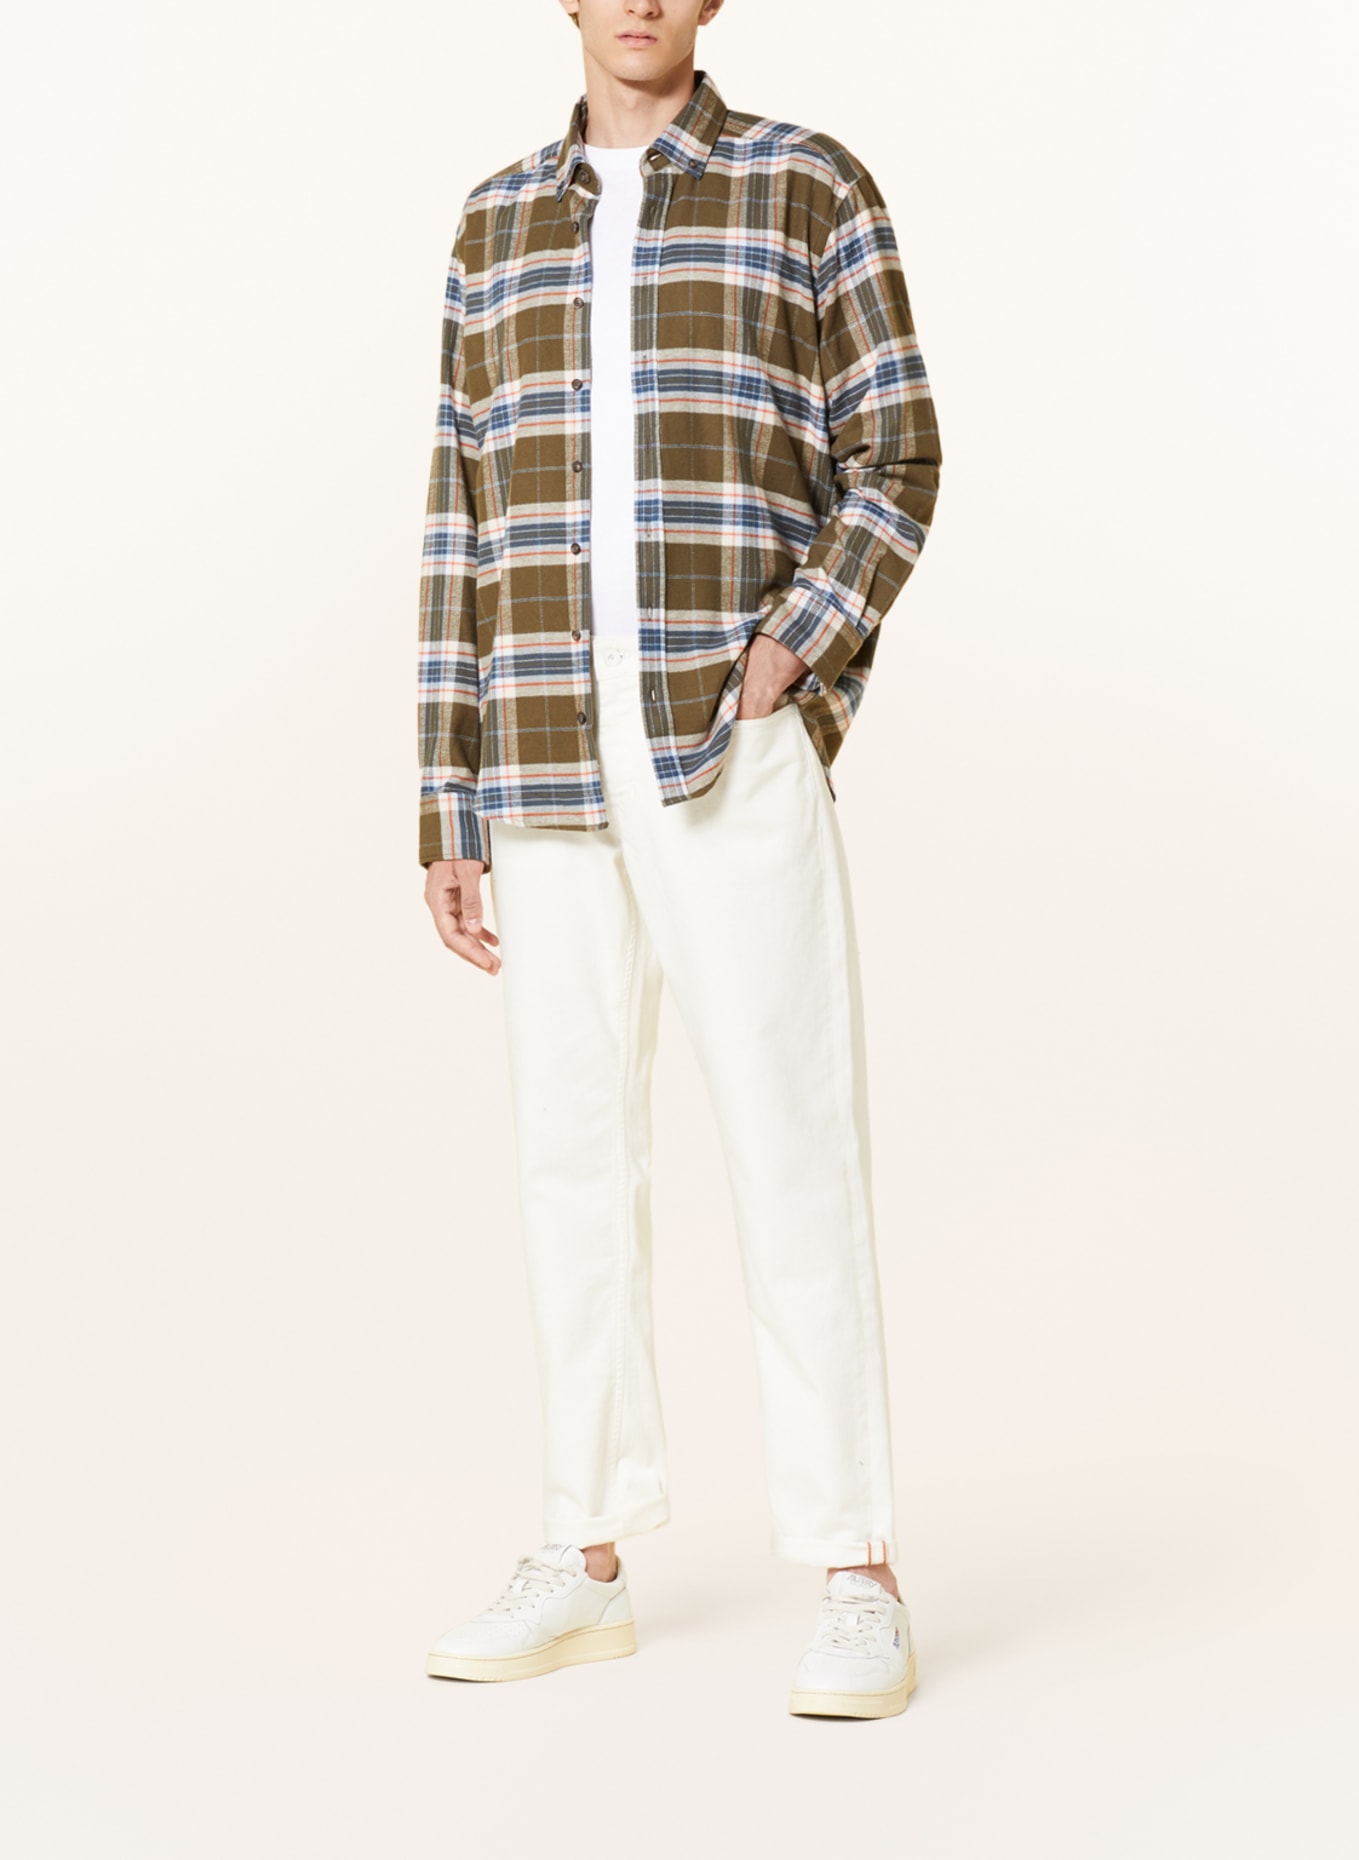 STROKESMAN'S Flannel shirt regular fit, Color: OLIVE/ BLUE GRAY/ ORANGE (Image 2)